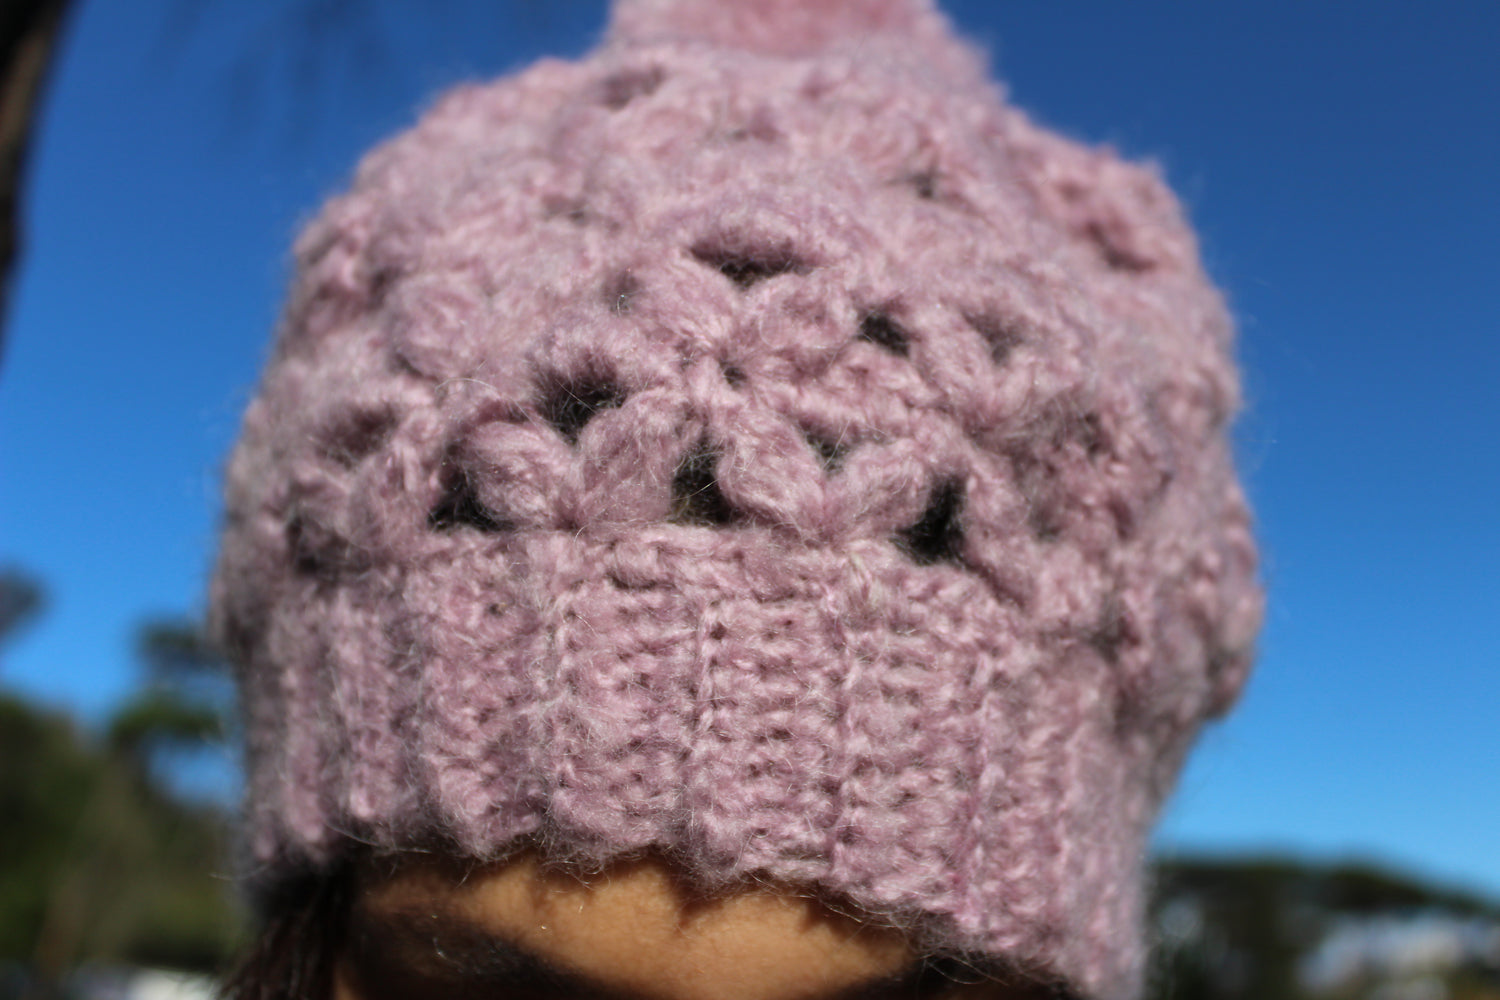 Cappello in 100% lana merino e pon pon rosa